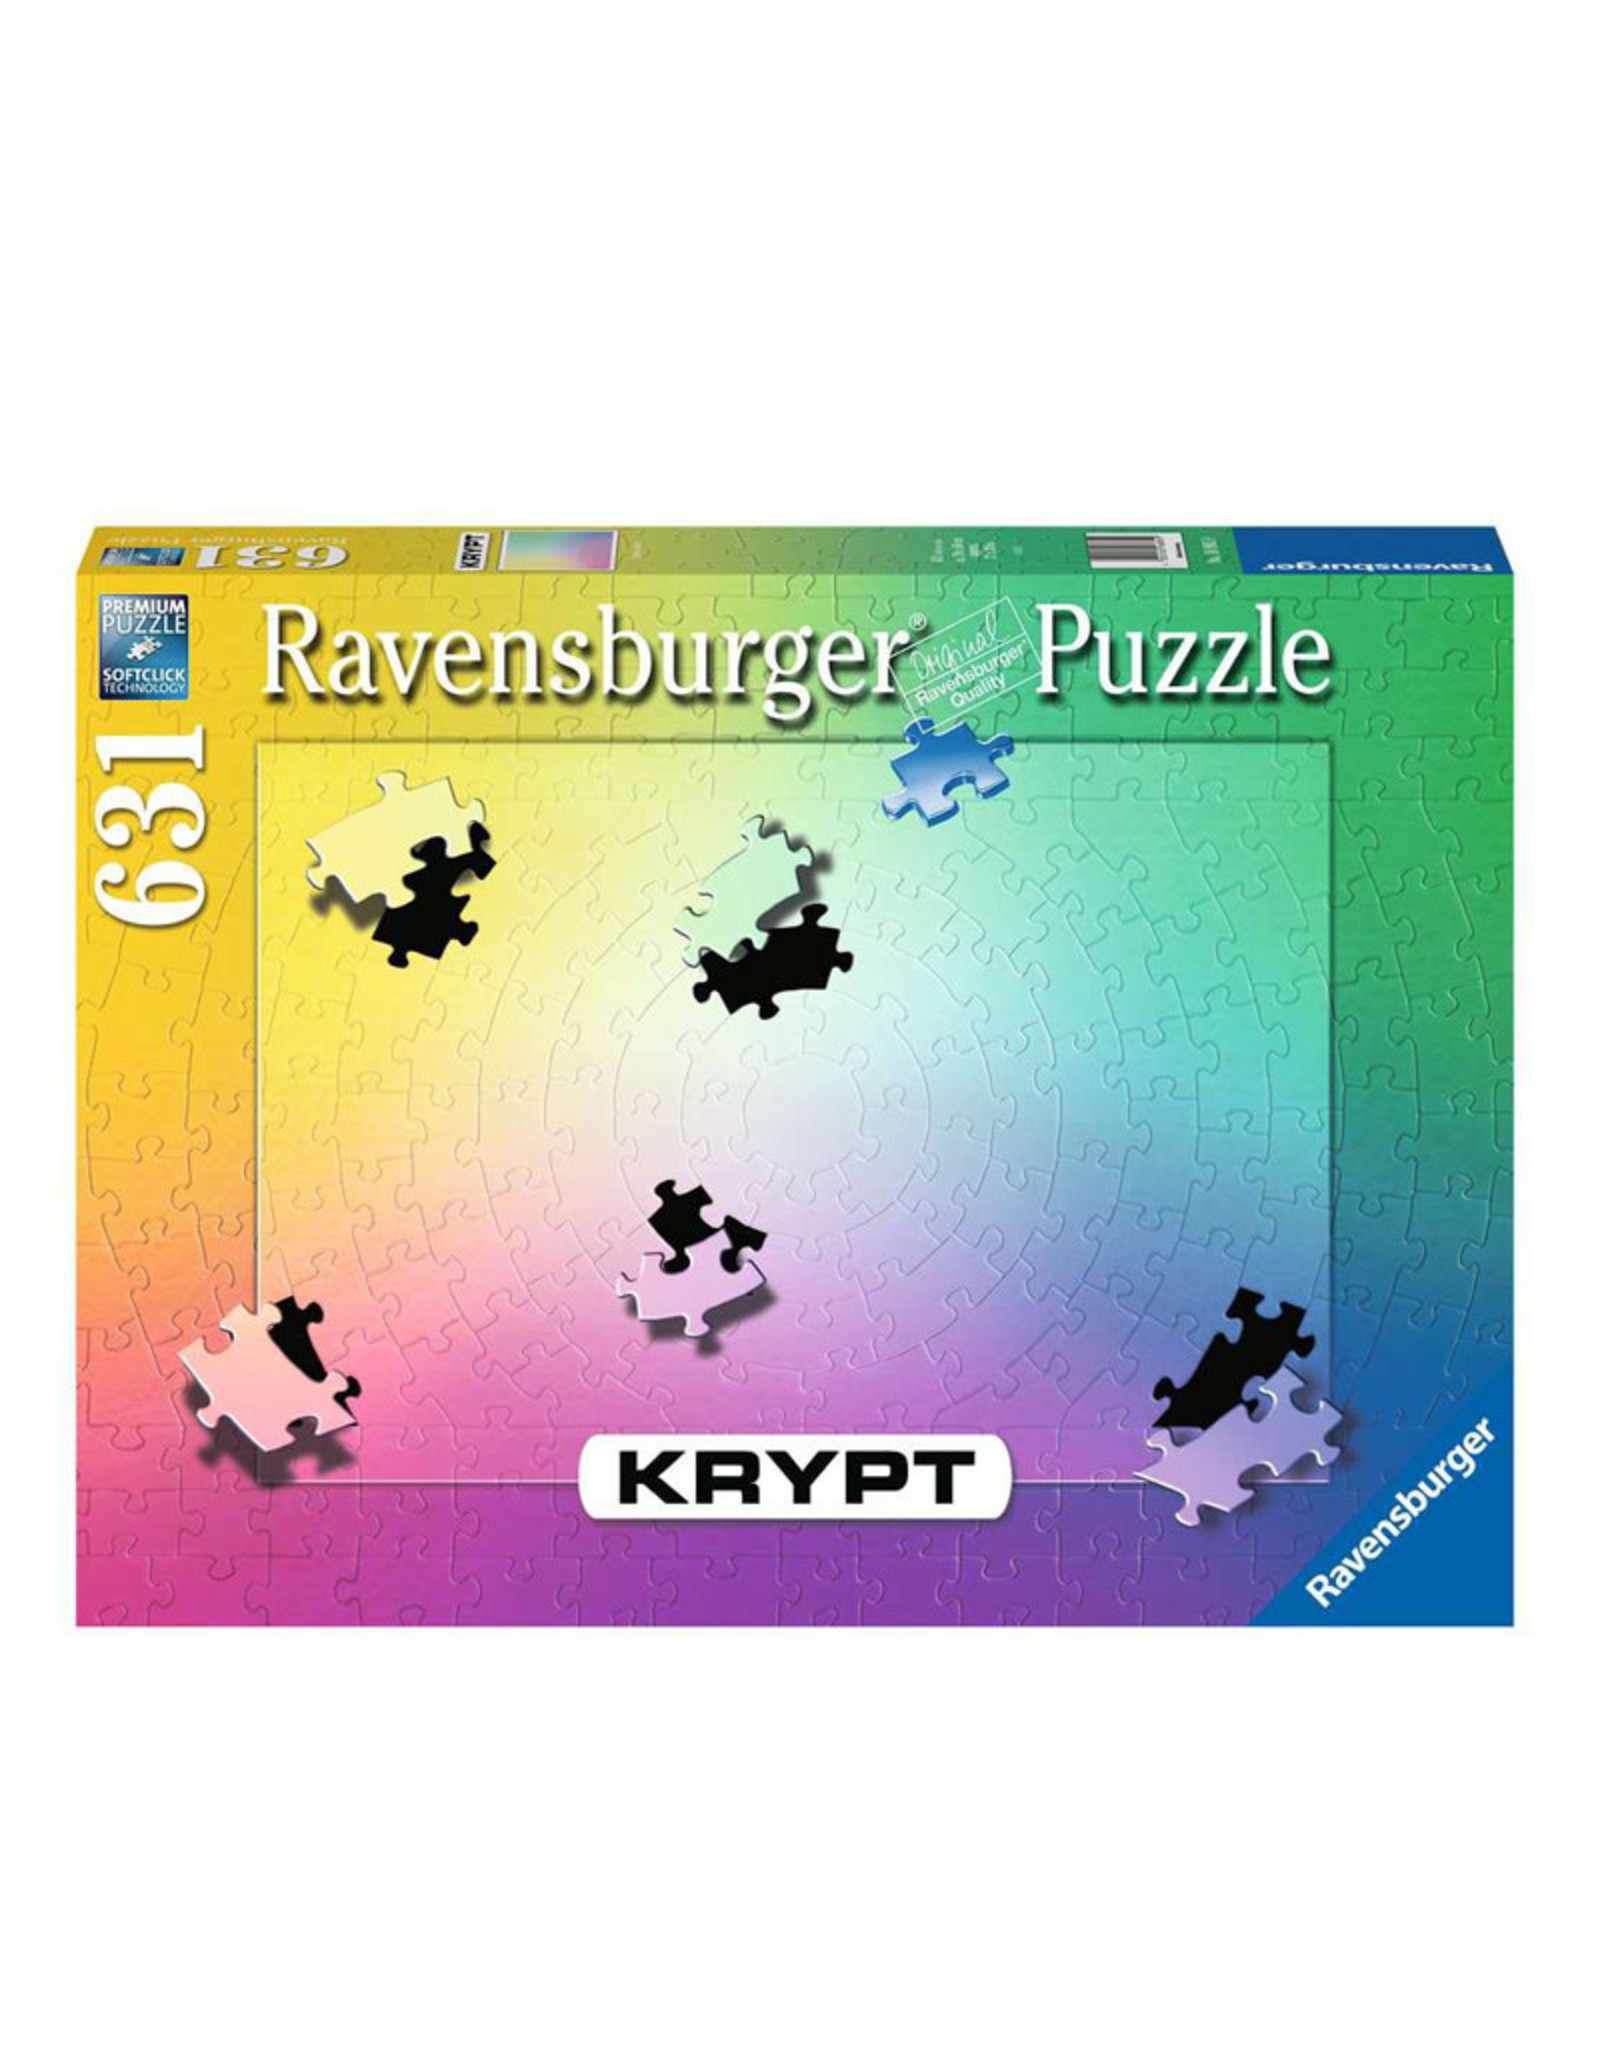 Ravensburger Krypt Gradient Puzzle (631 PCS)